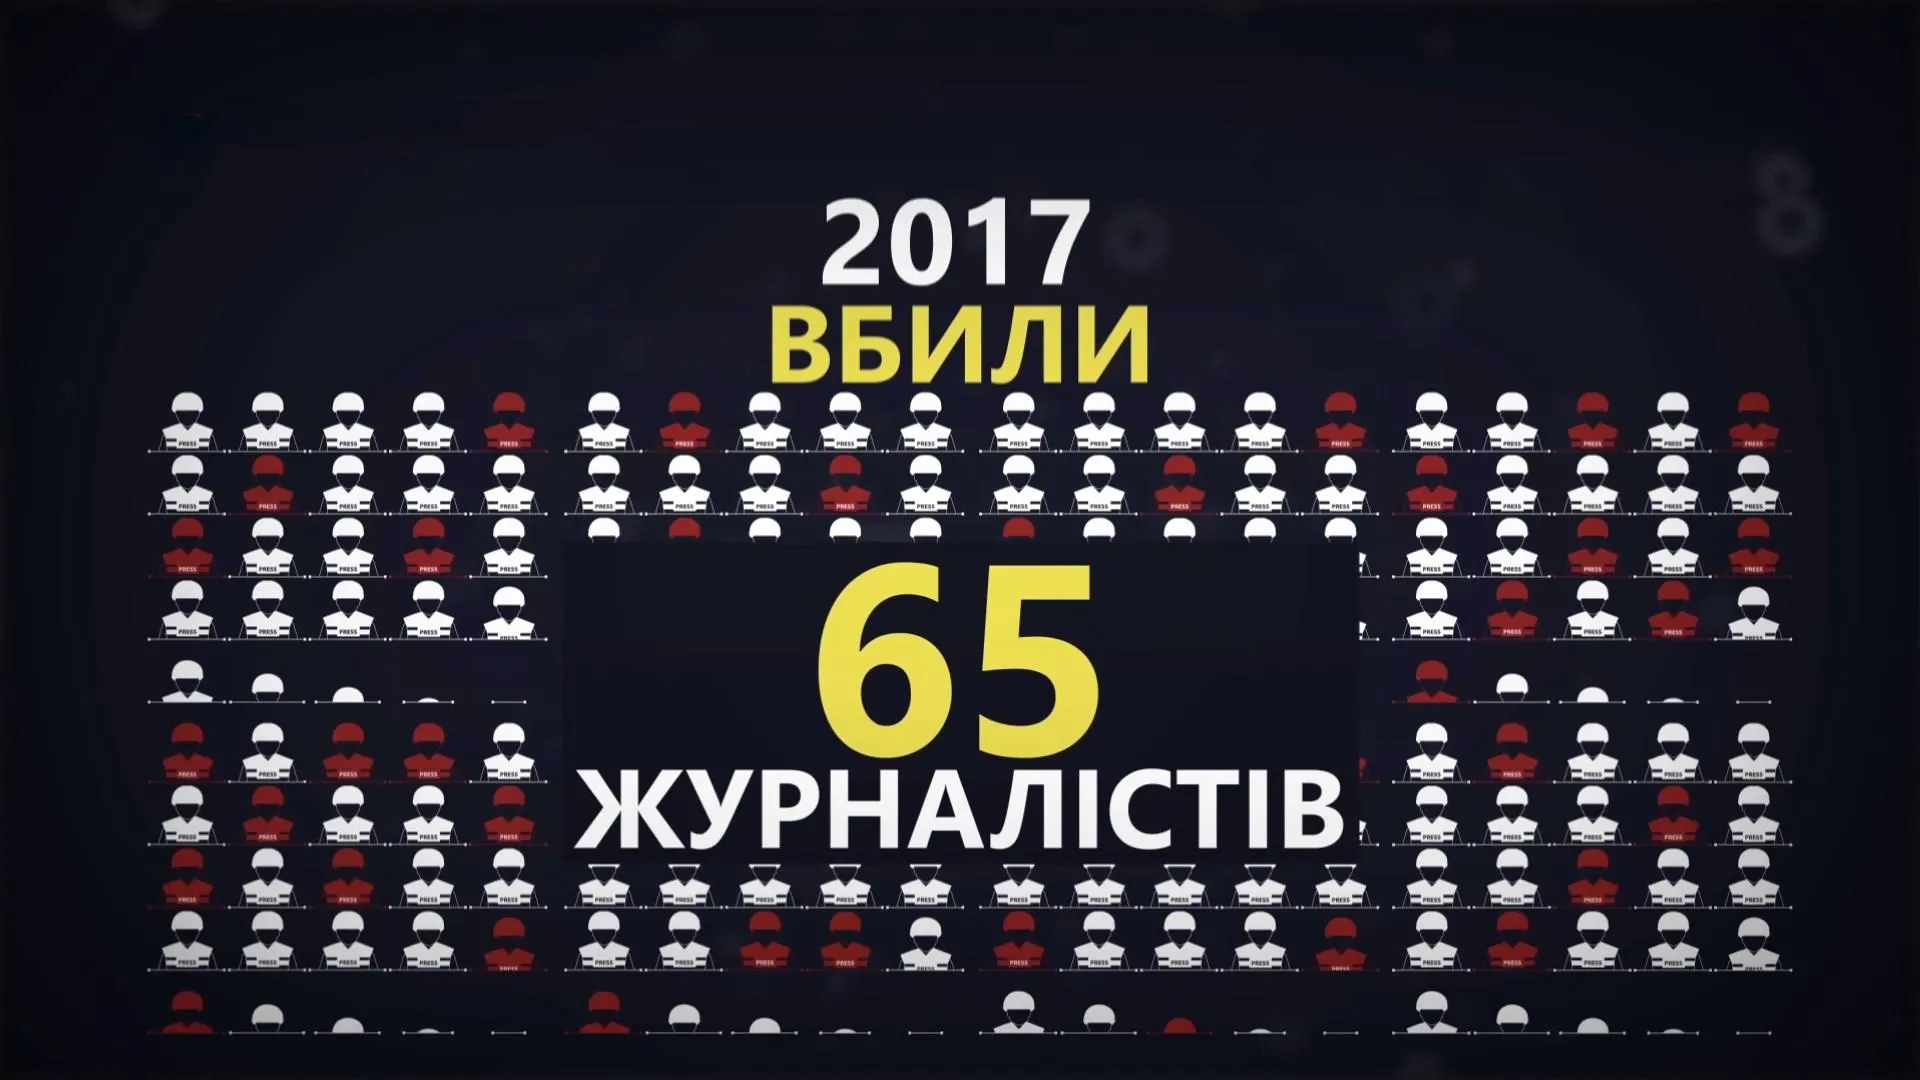 За 2017 рік по всьому світу вбили 65 журналістів